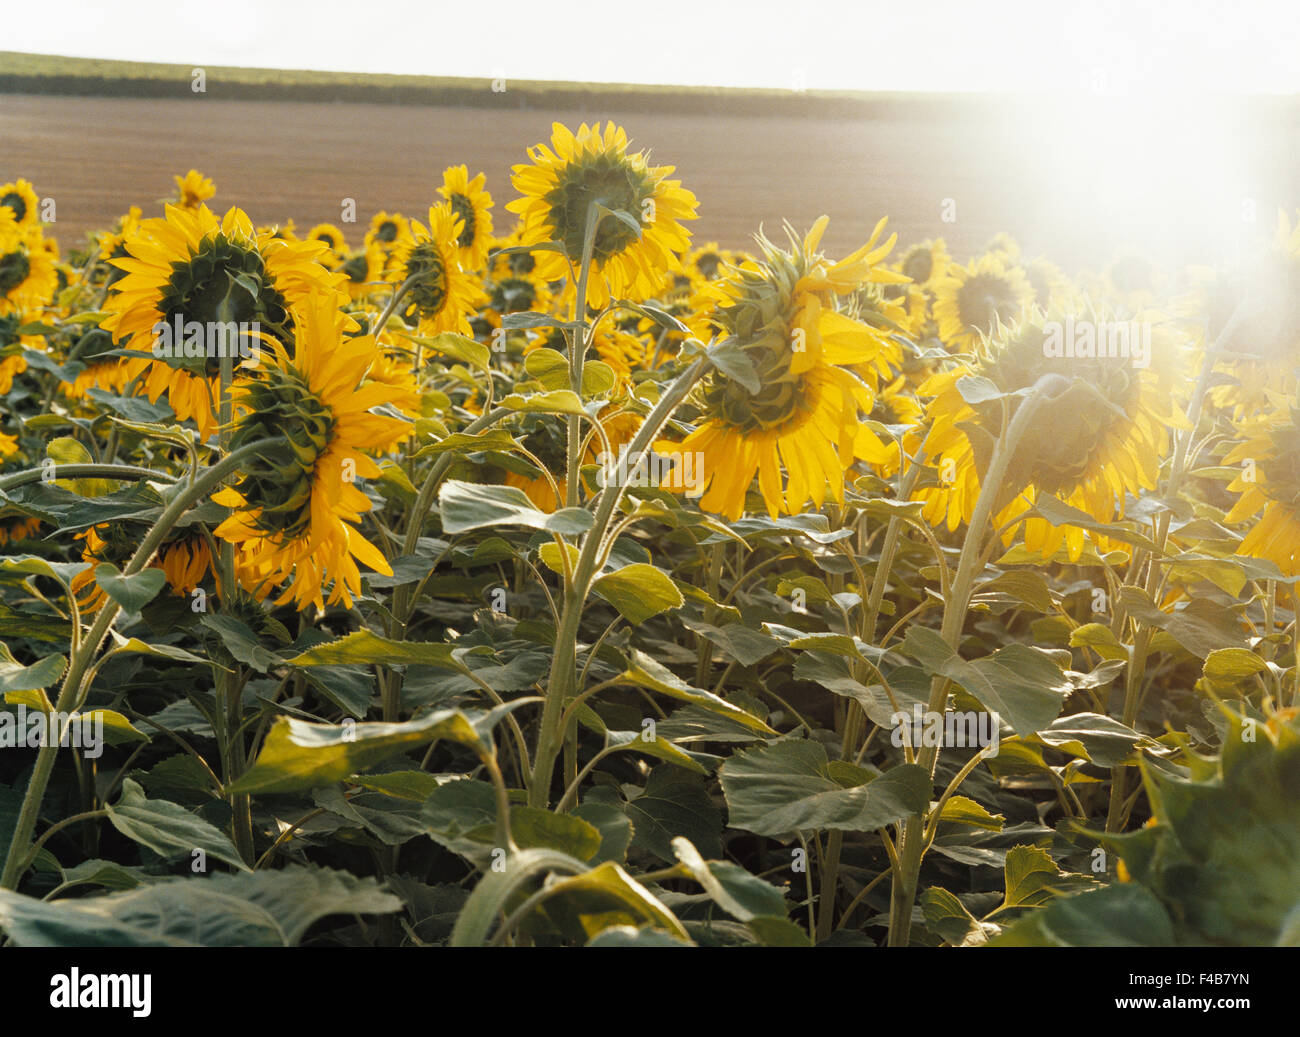 Landwirtschaft-Katalog 2 Farbe Bild Blume horizontale Feldpflanzen Sommer Sonnenblume schwedischen Katalog 3 Stockfoto